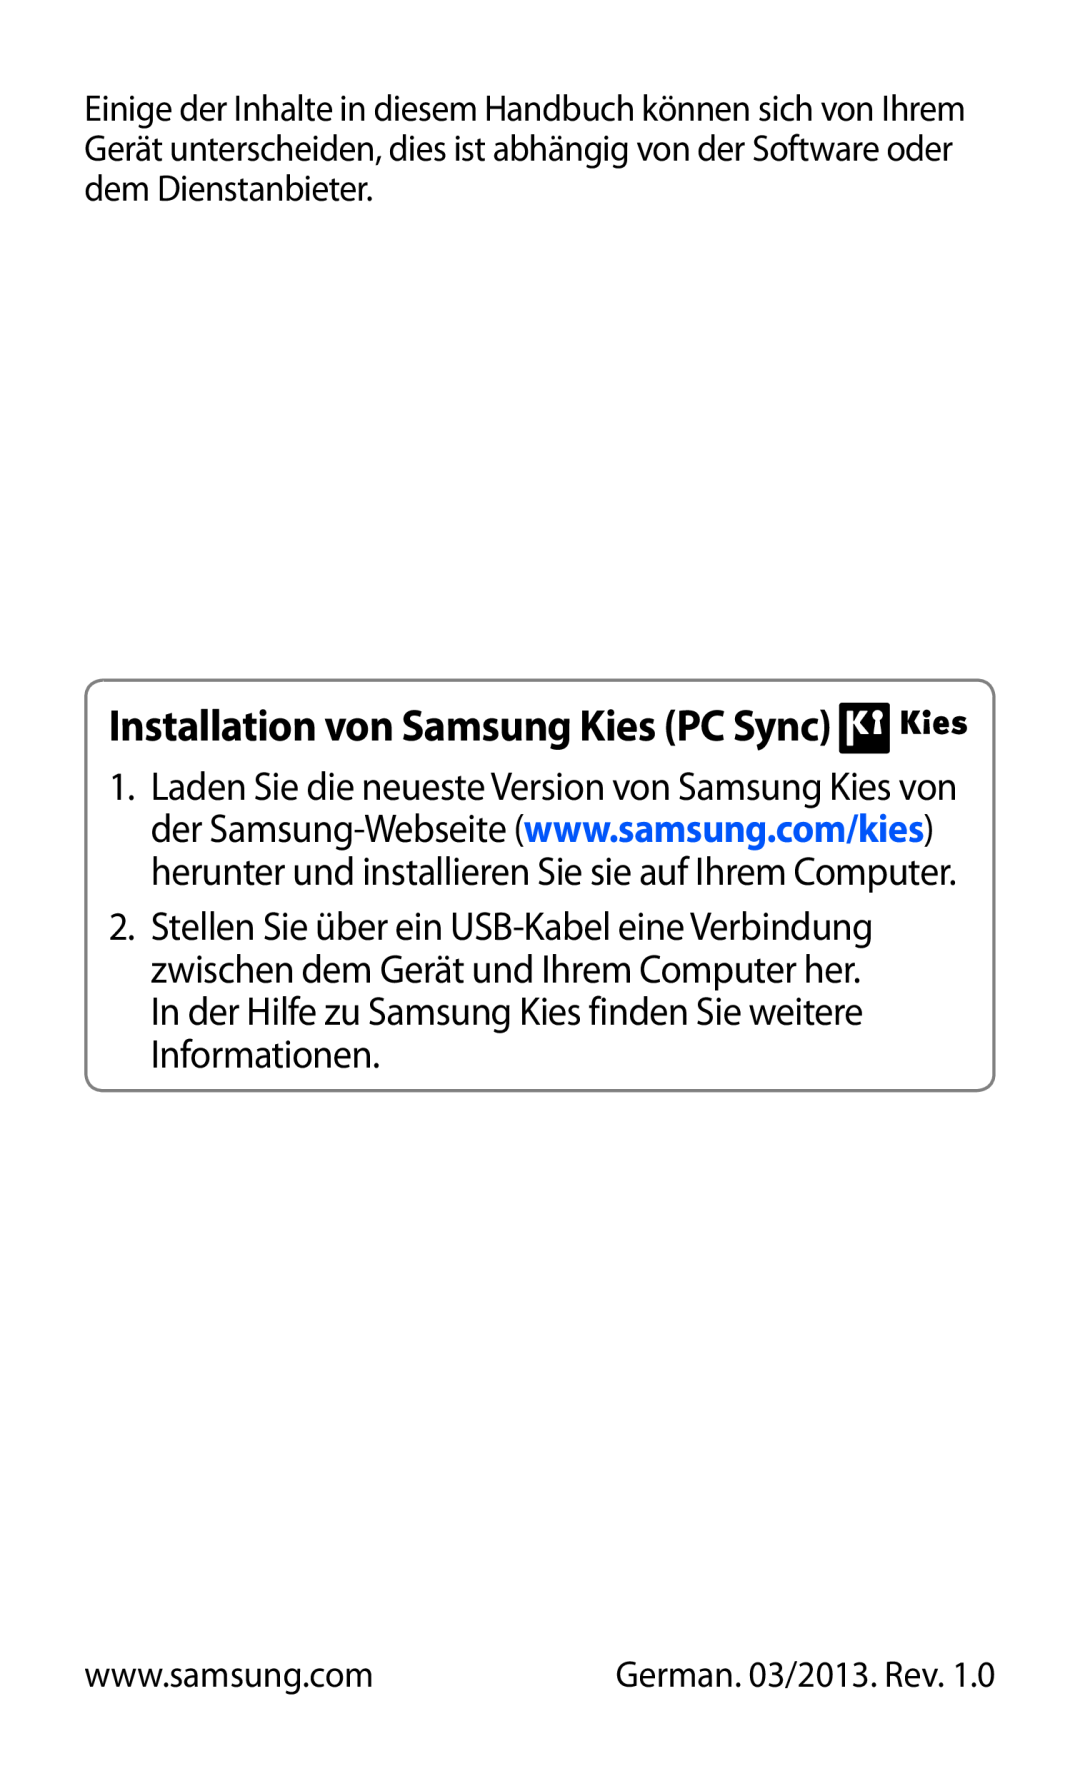 Samsung GT-P3110ZWADBT, GT-P3110ZWFDBT, GT-P3110TSAXEO manual Installation von Samsung Kies PC Sync, German. 03/2013. Rev 